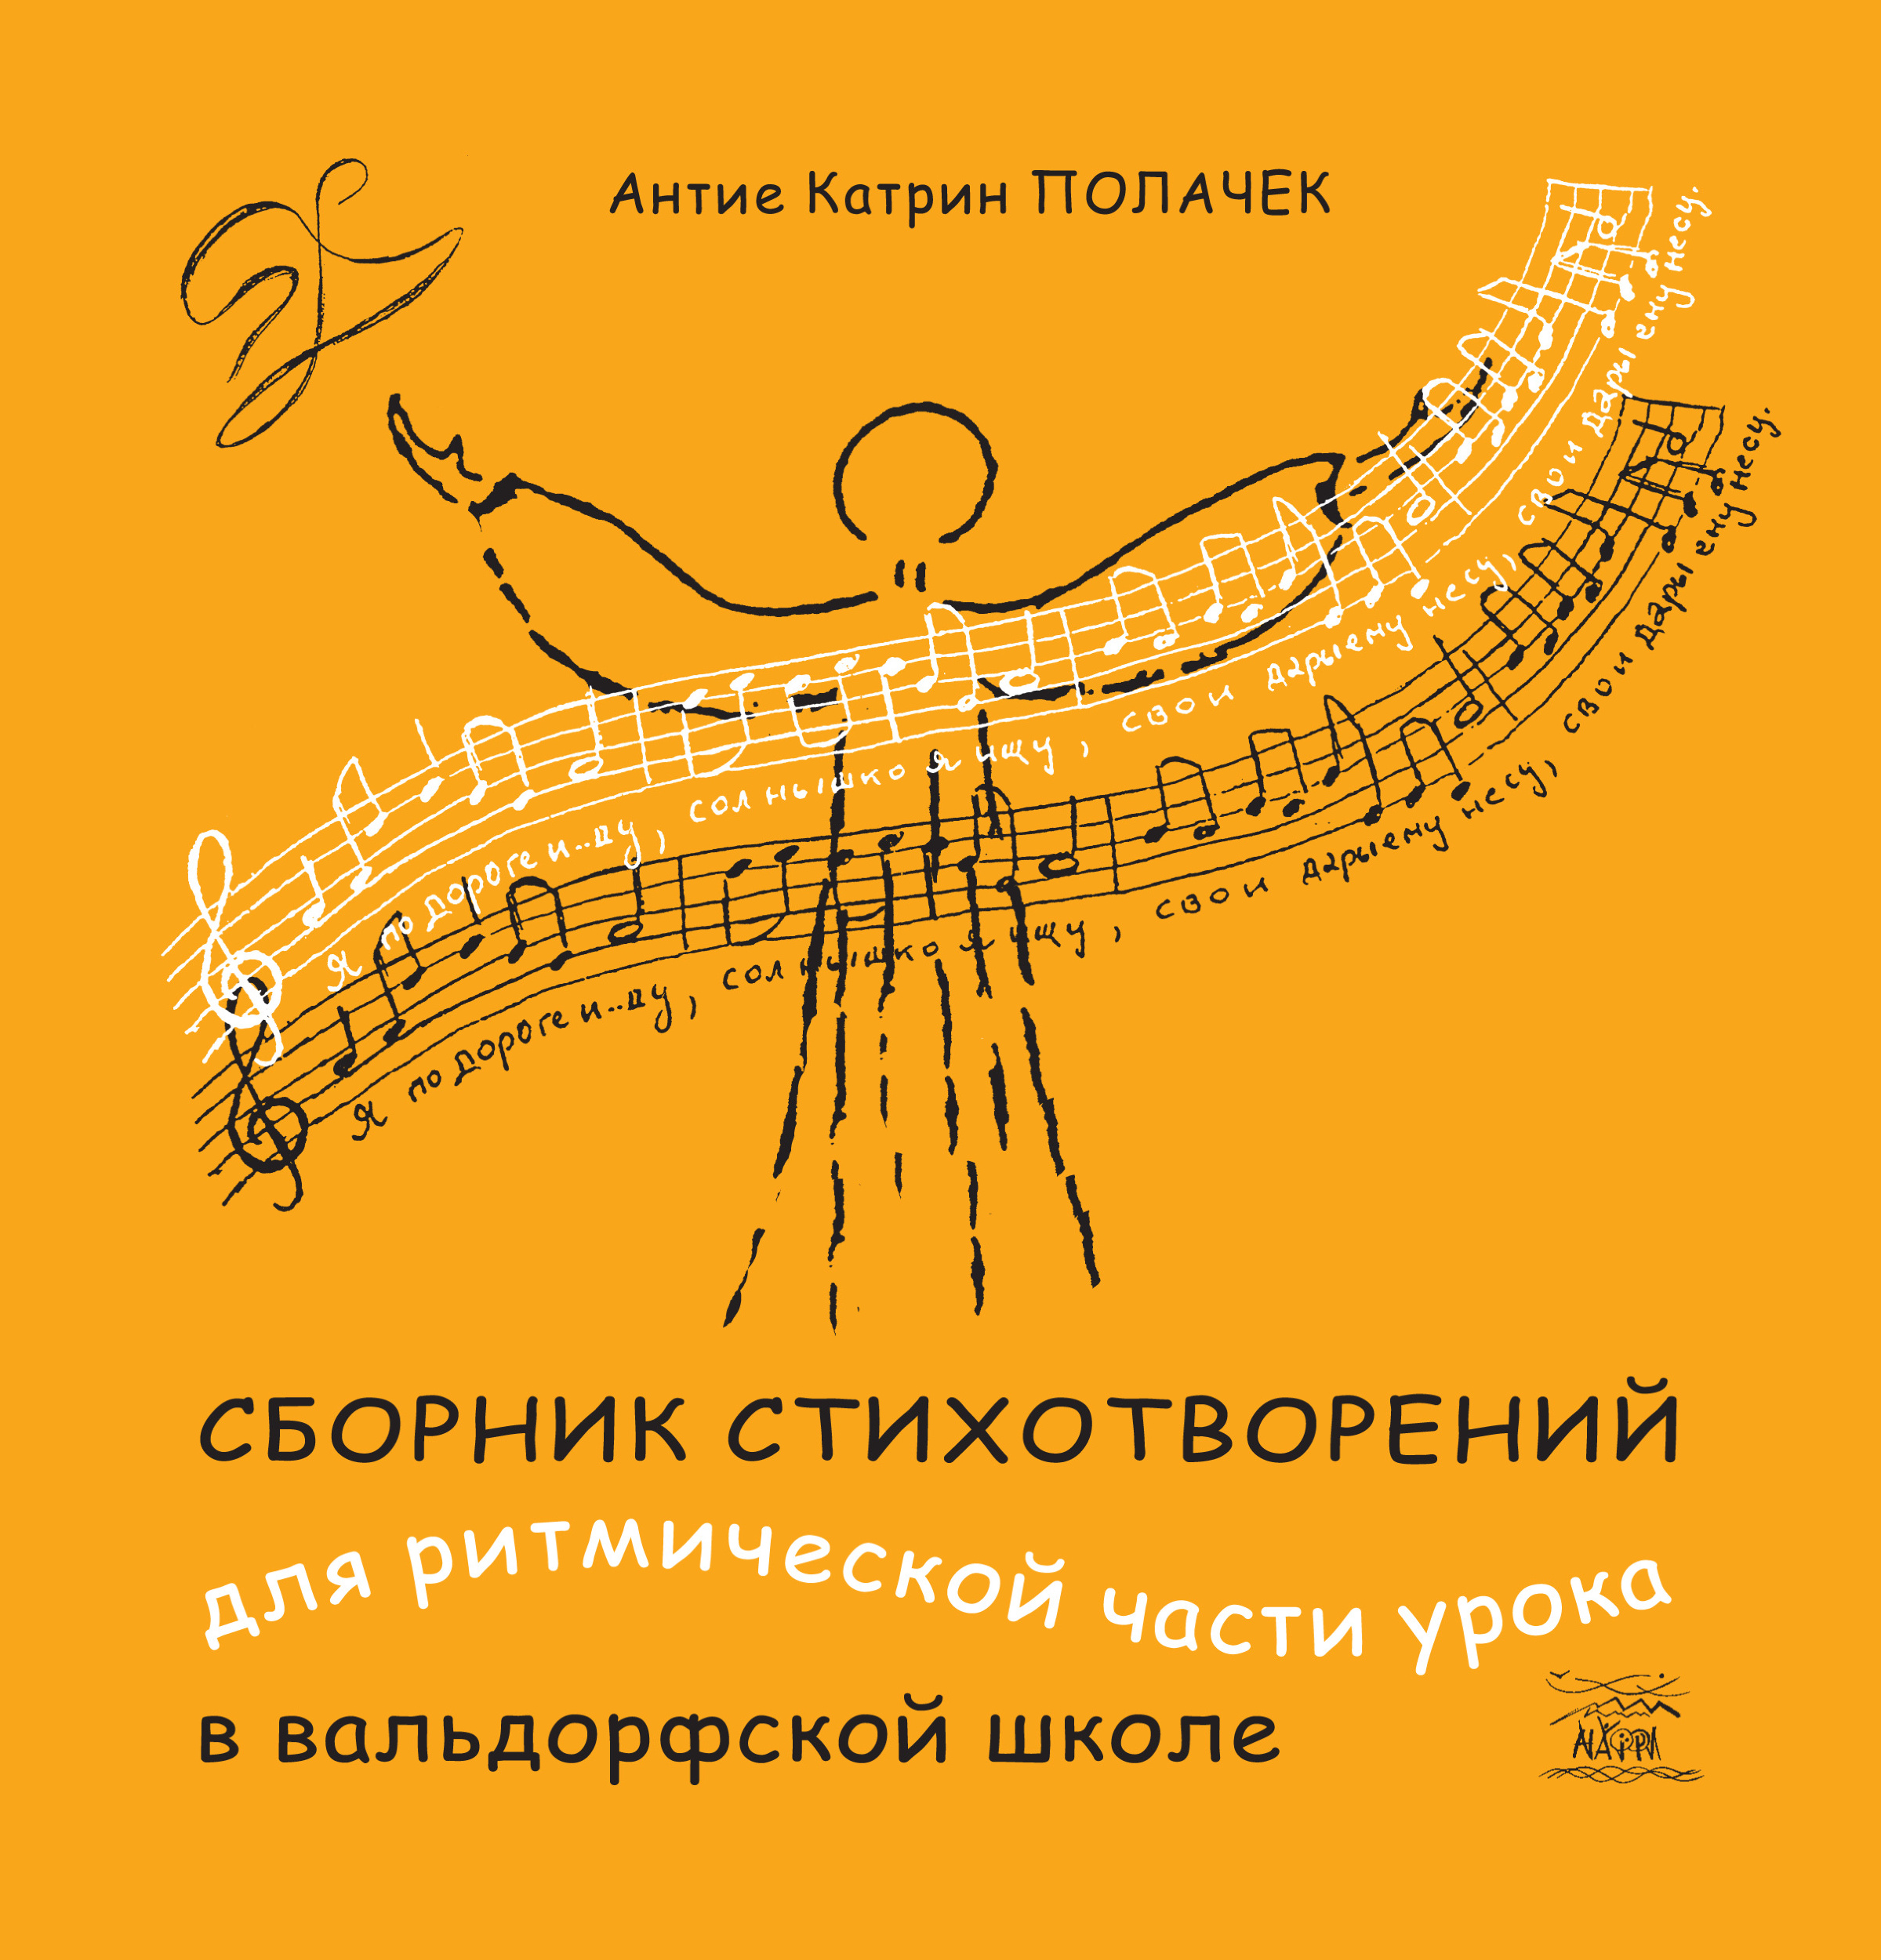 Сборник стихотворений для ритмической части урока в вальдорфской школе  (2019 год). Автор — Антіє Полачек. 